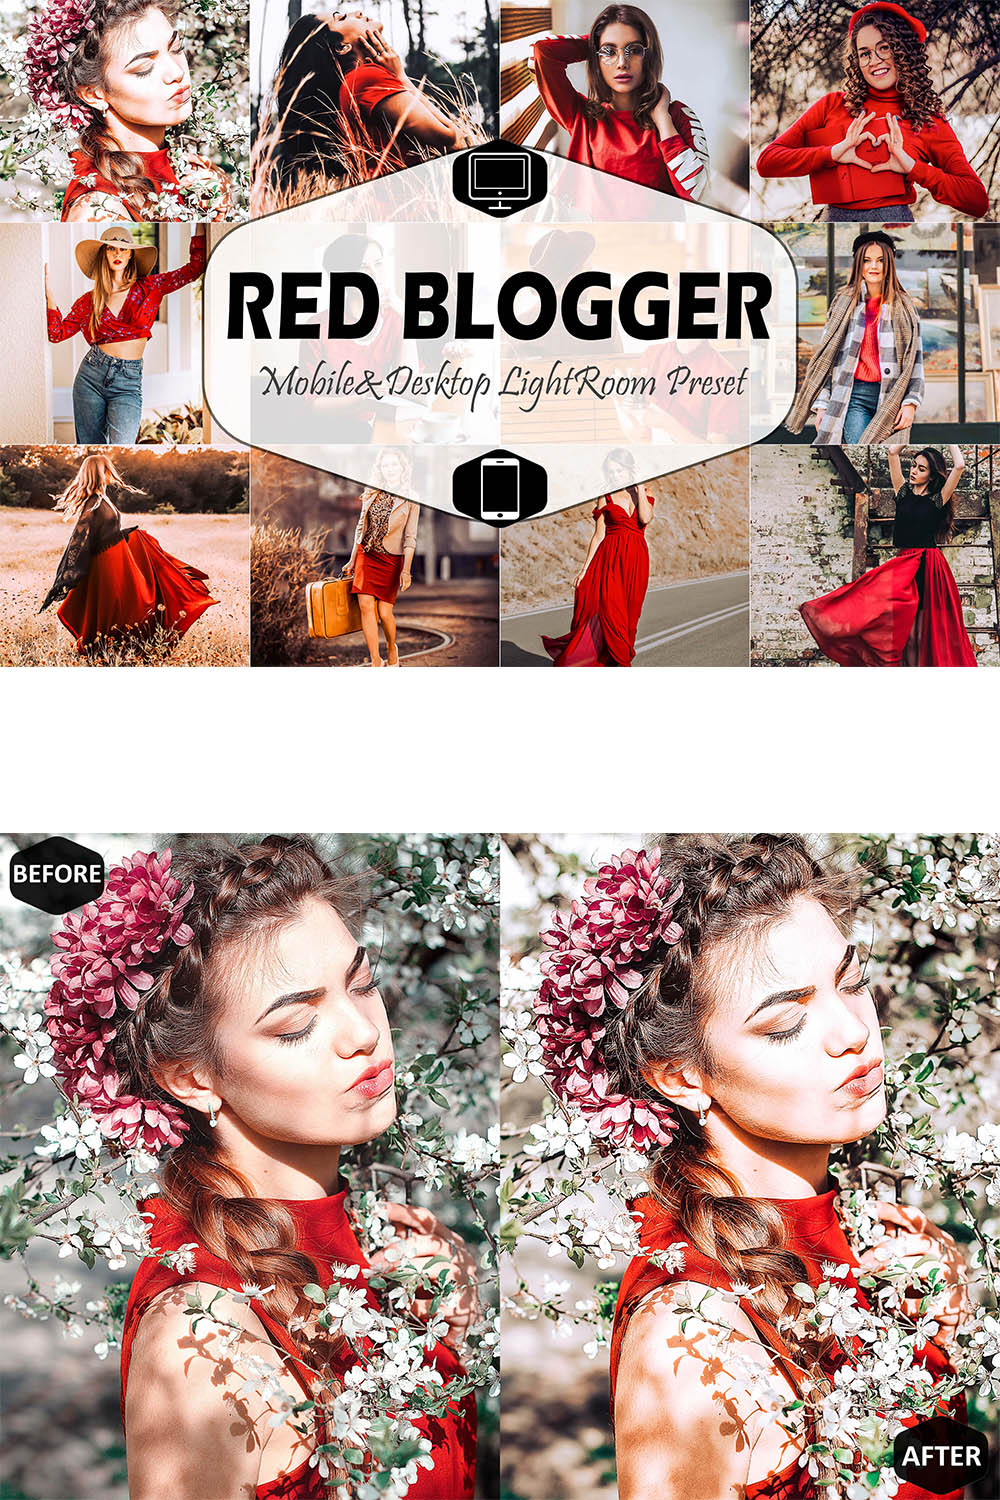 Red Blogger Mobile & Desktop Lightroom Presets, instagram modern LR preset, trendy filter , best DNG travel lifestyle fashion theme pinterest preview image.